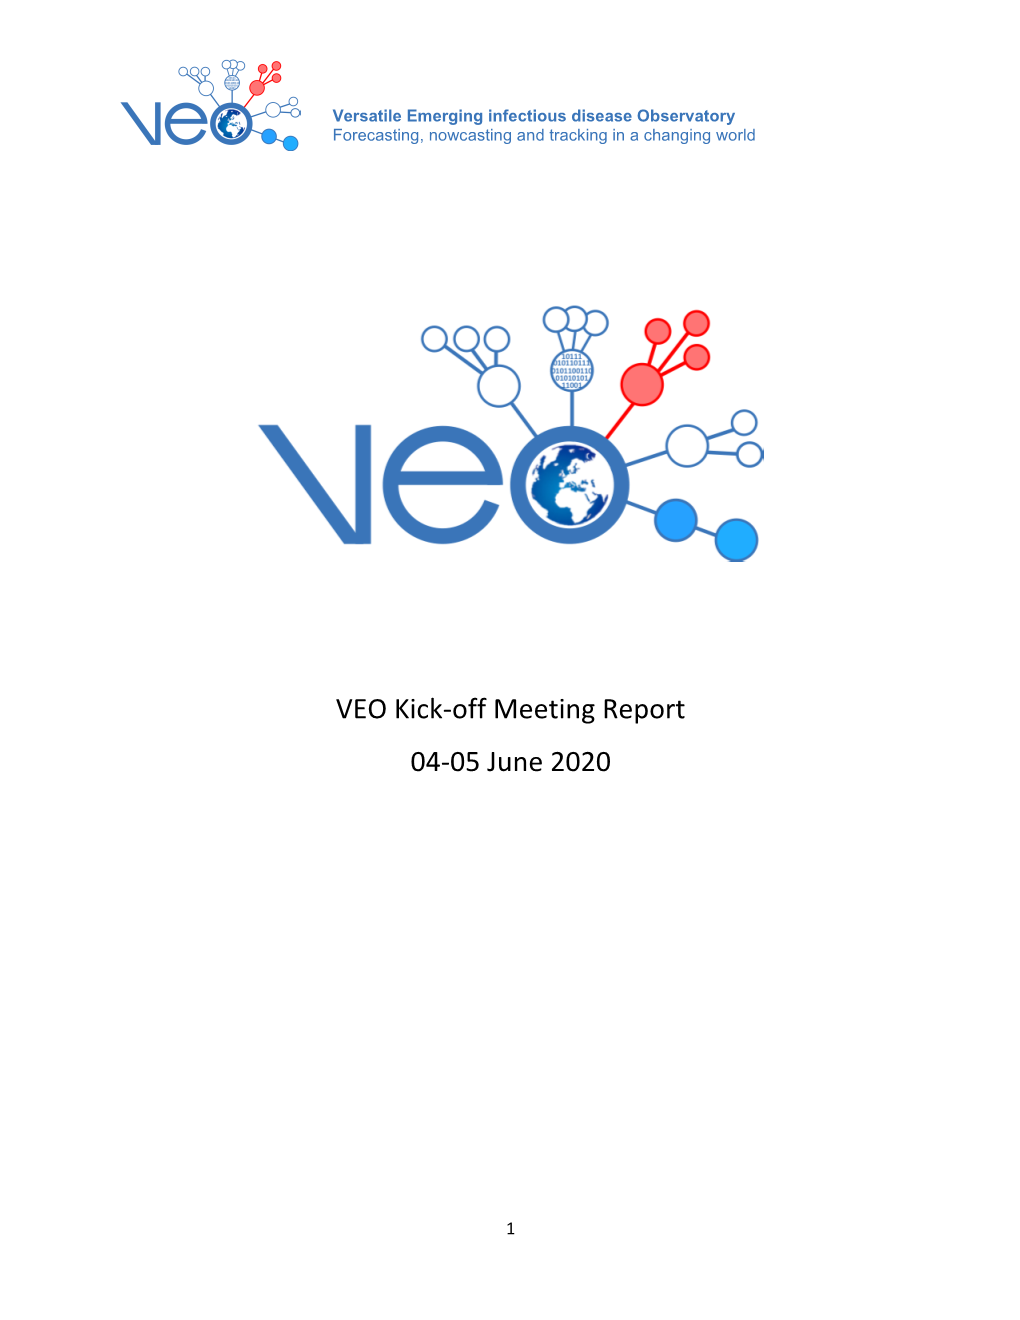 VEO Kick-Off Meeting Report 04-05 June 2020